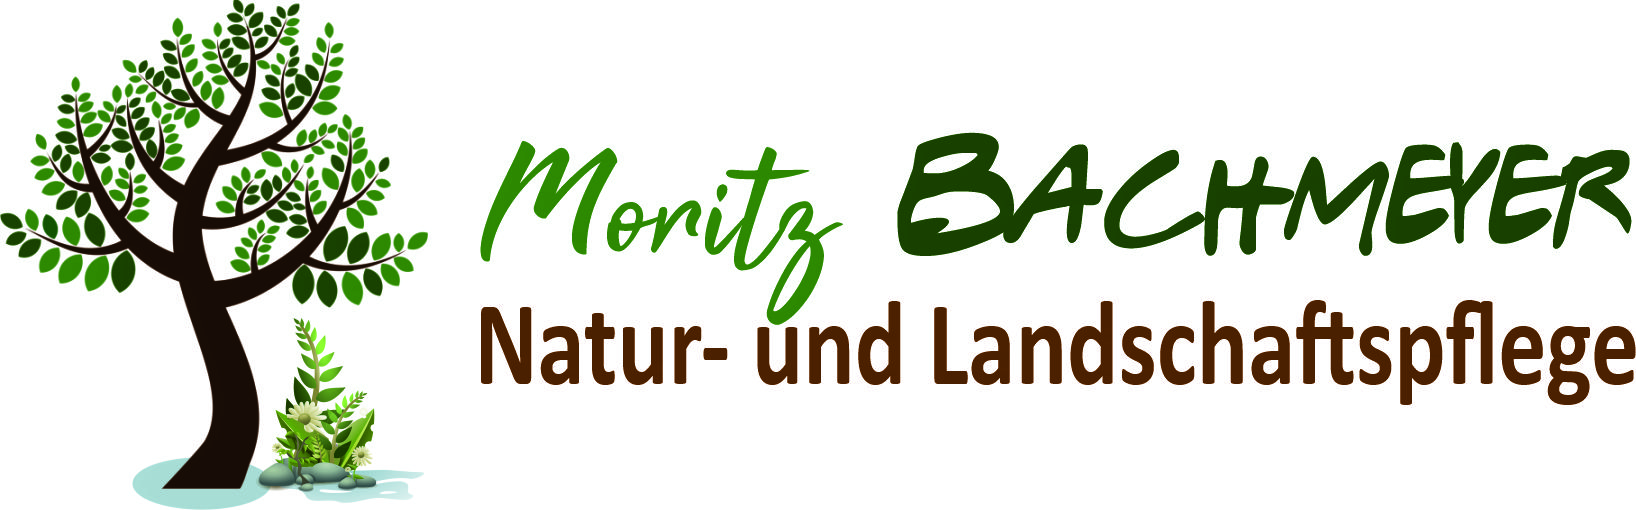 Natur- und Landschaftspflege Moritz Bachmeyer